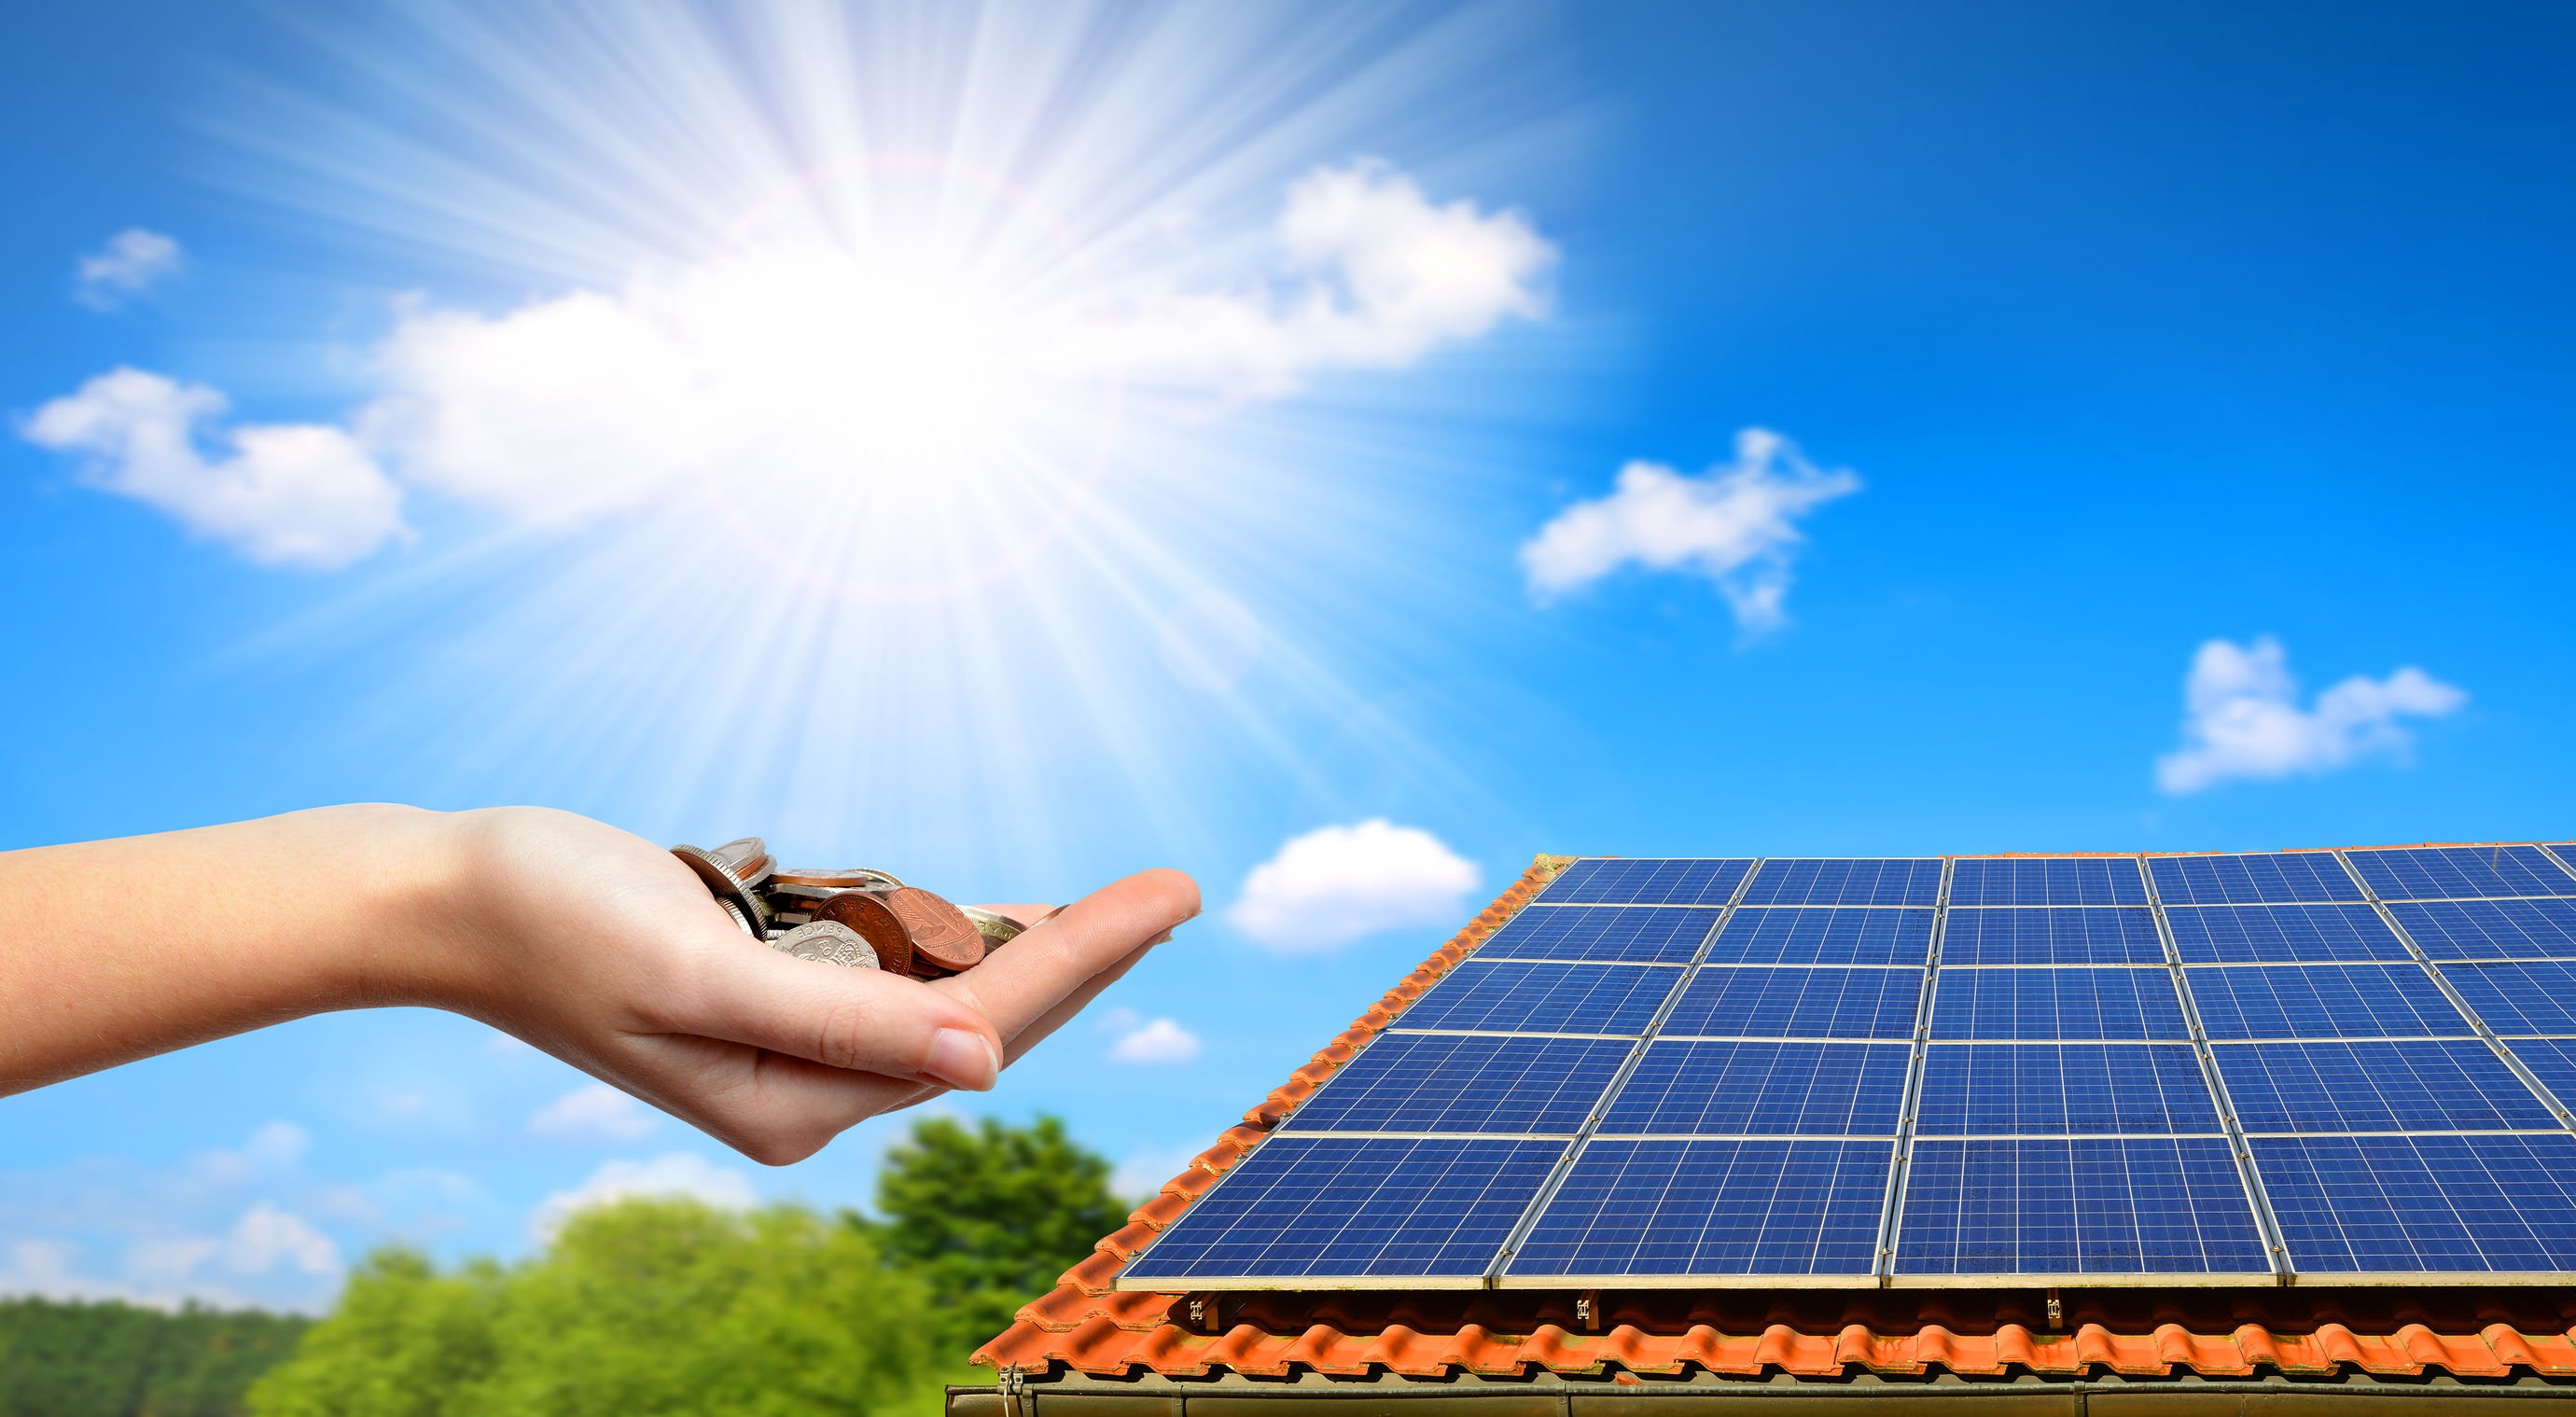 aides panneaux photovoltaïques,Panneau solaire sur le toit d'une maison avec pièces de monnaies pour signifier les économies d'énergies, prix des énergies